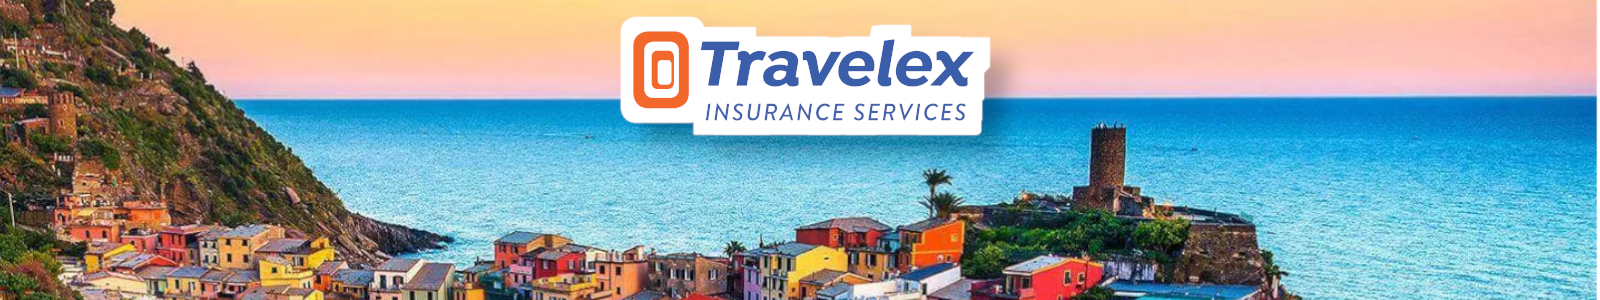 Travelex-MundoTours -Blog-Banner